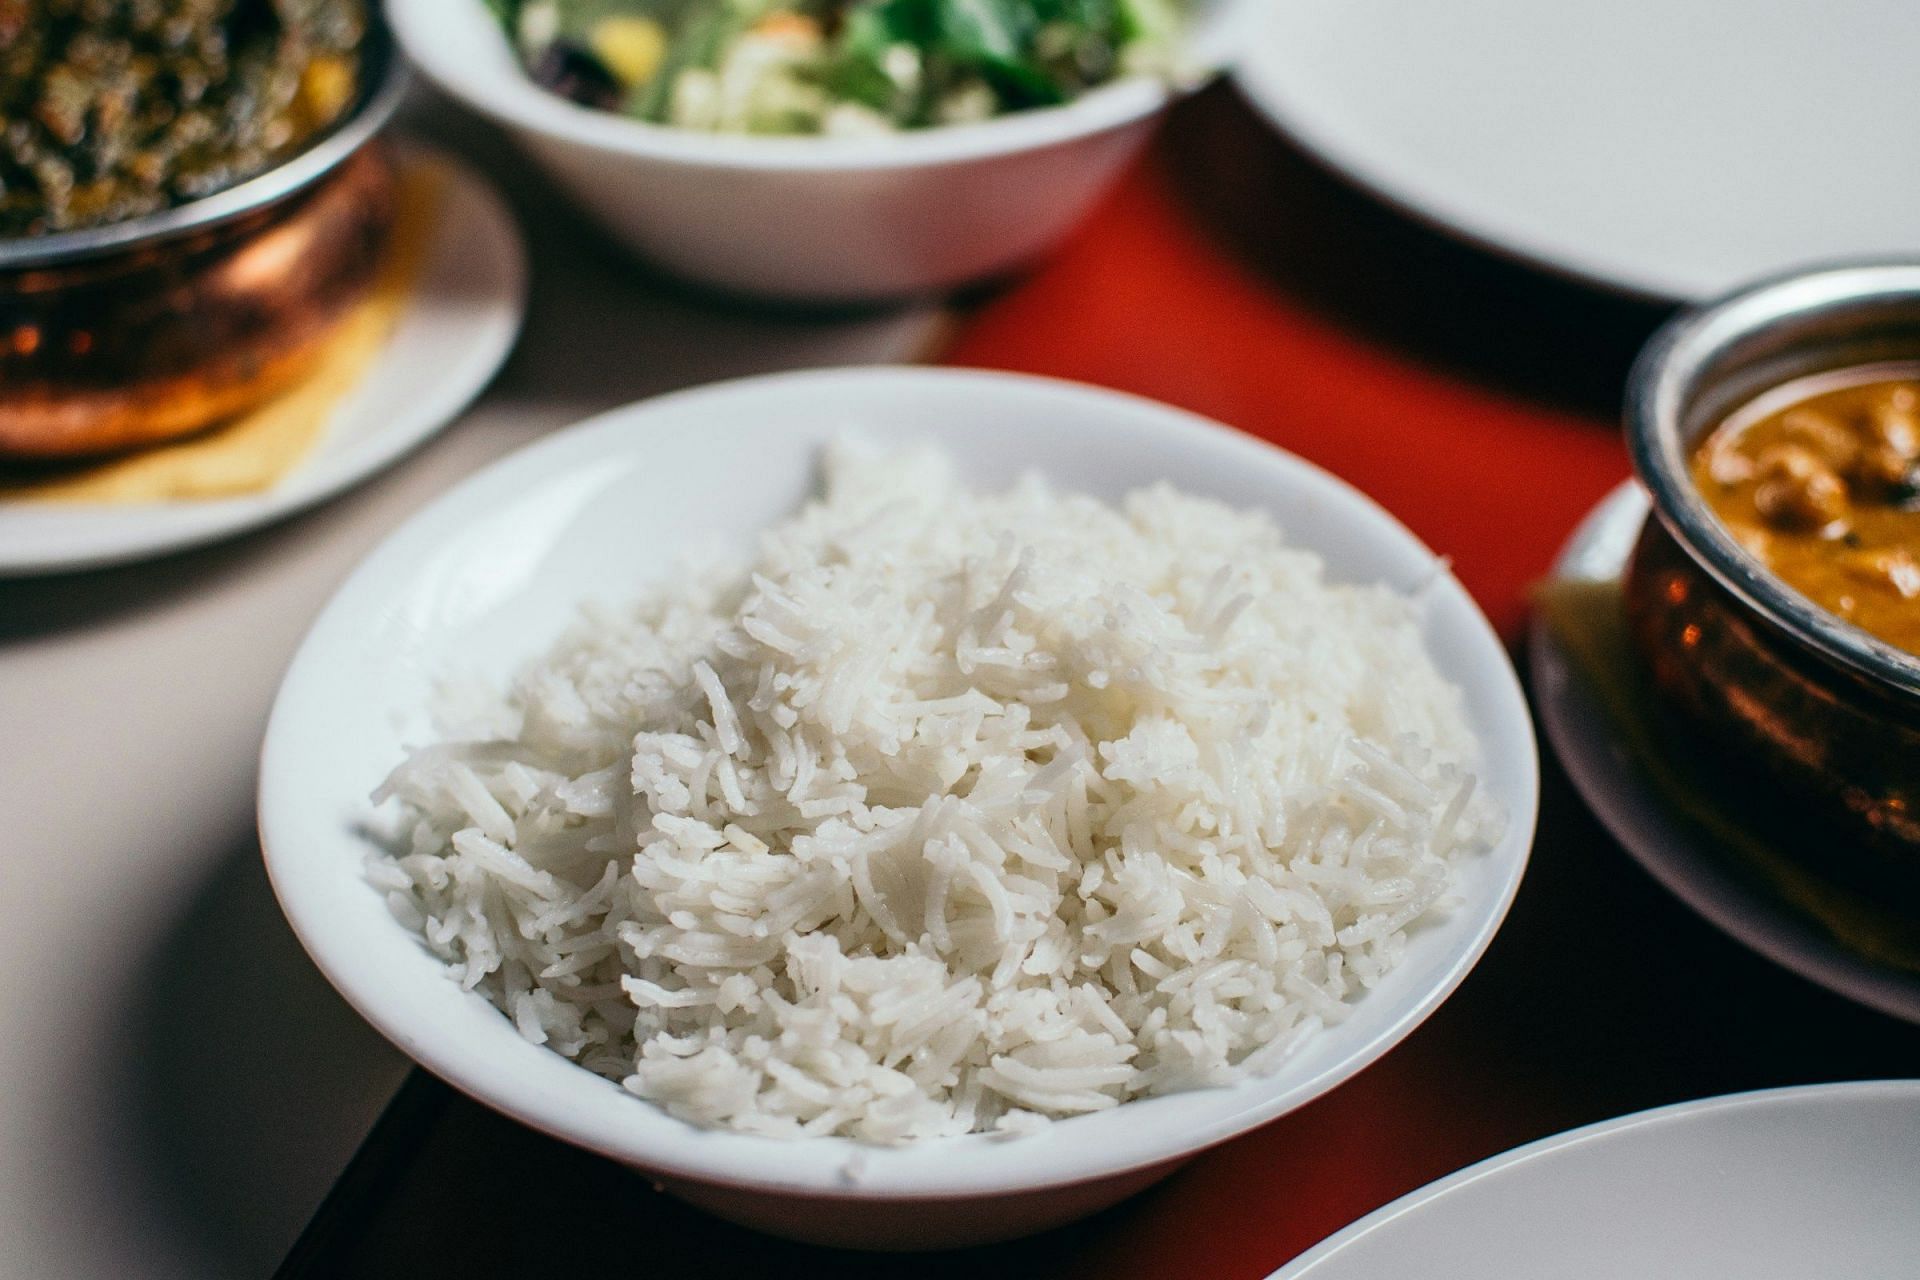 Rice hack for weight loss (Image via Unsplash/Pillie R Priske)